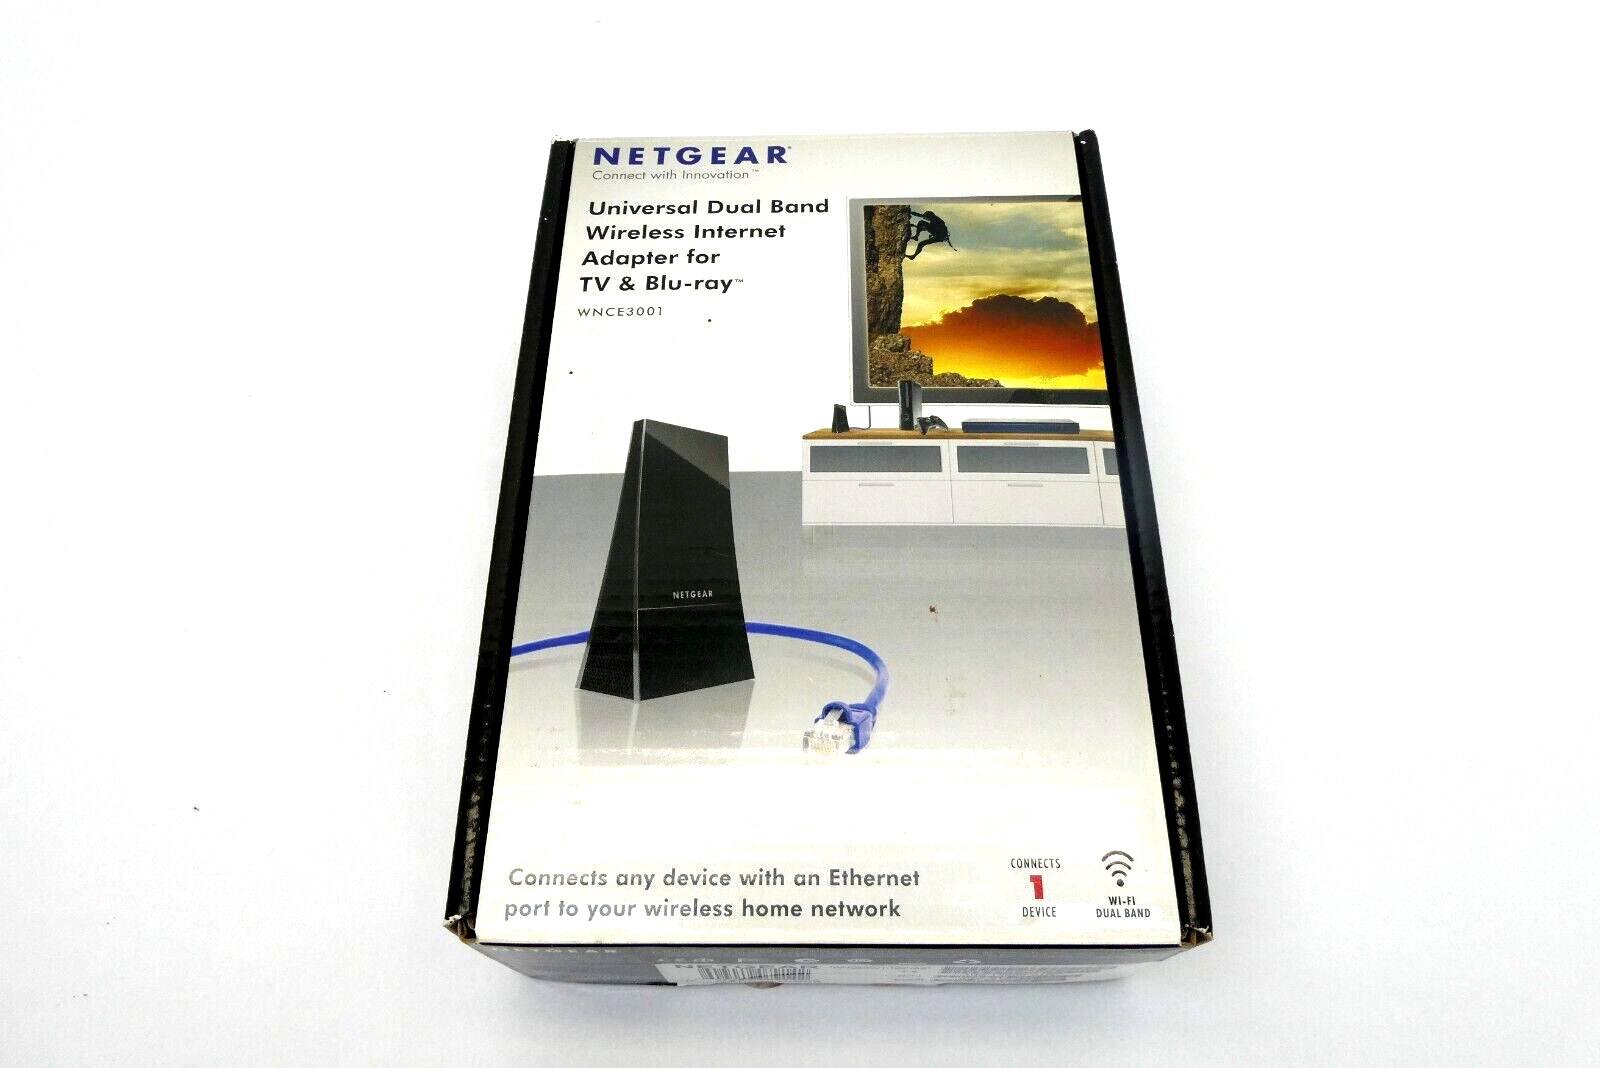 Used Netgear Universal Dual Band Wireless Internet Adapter TV Blu-Ray WNCE3001